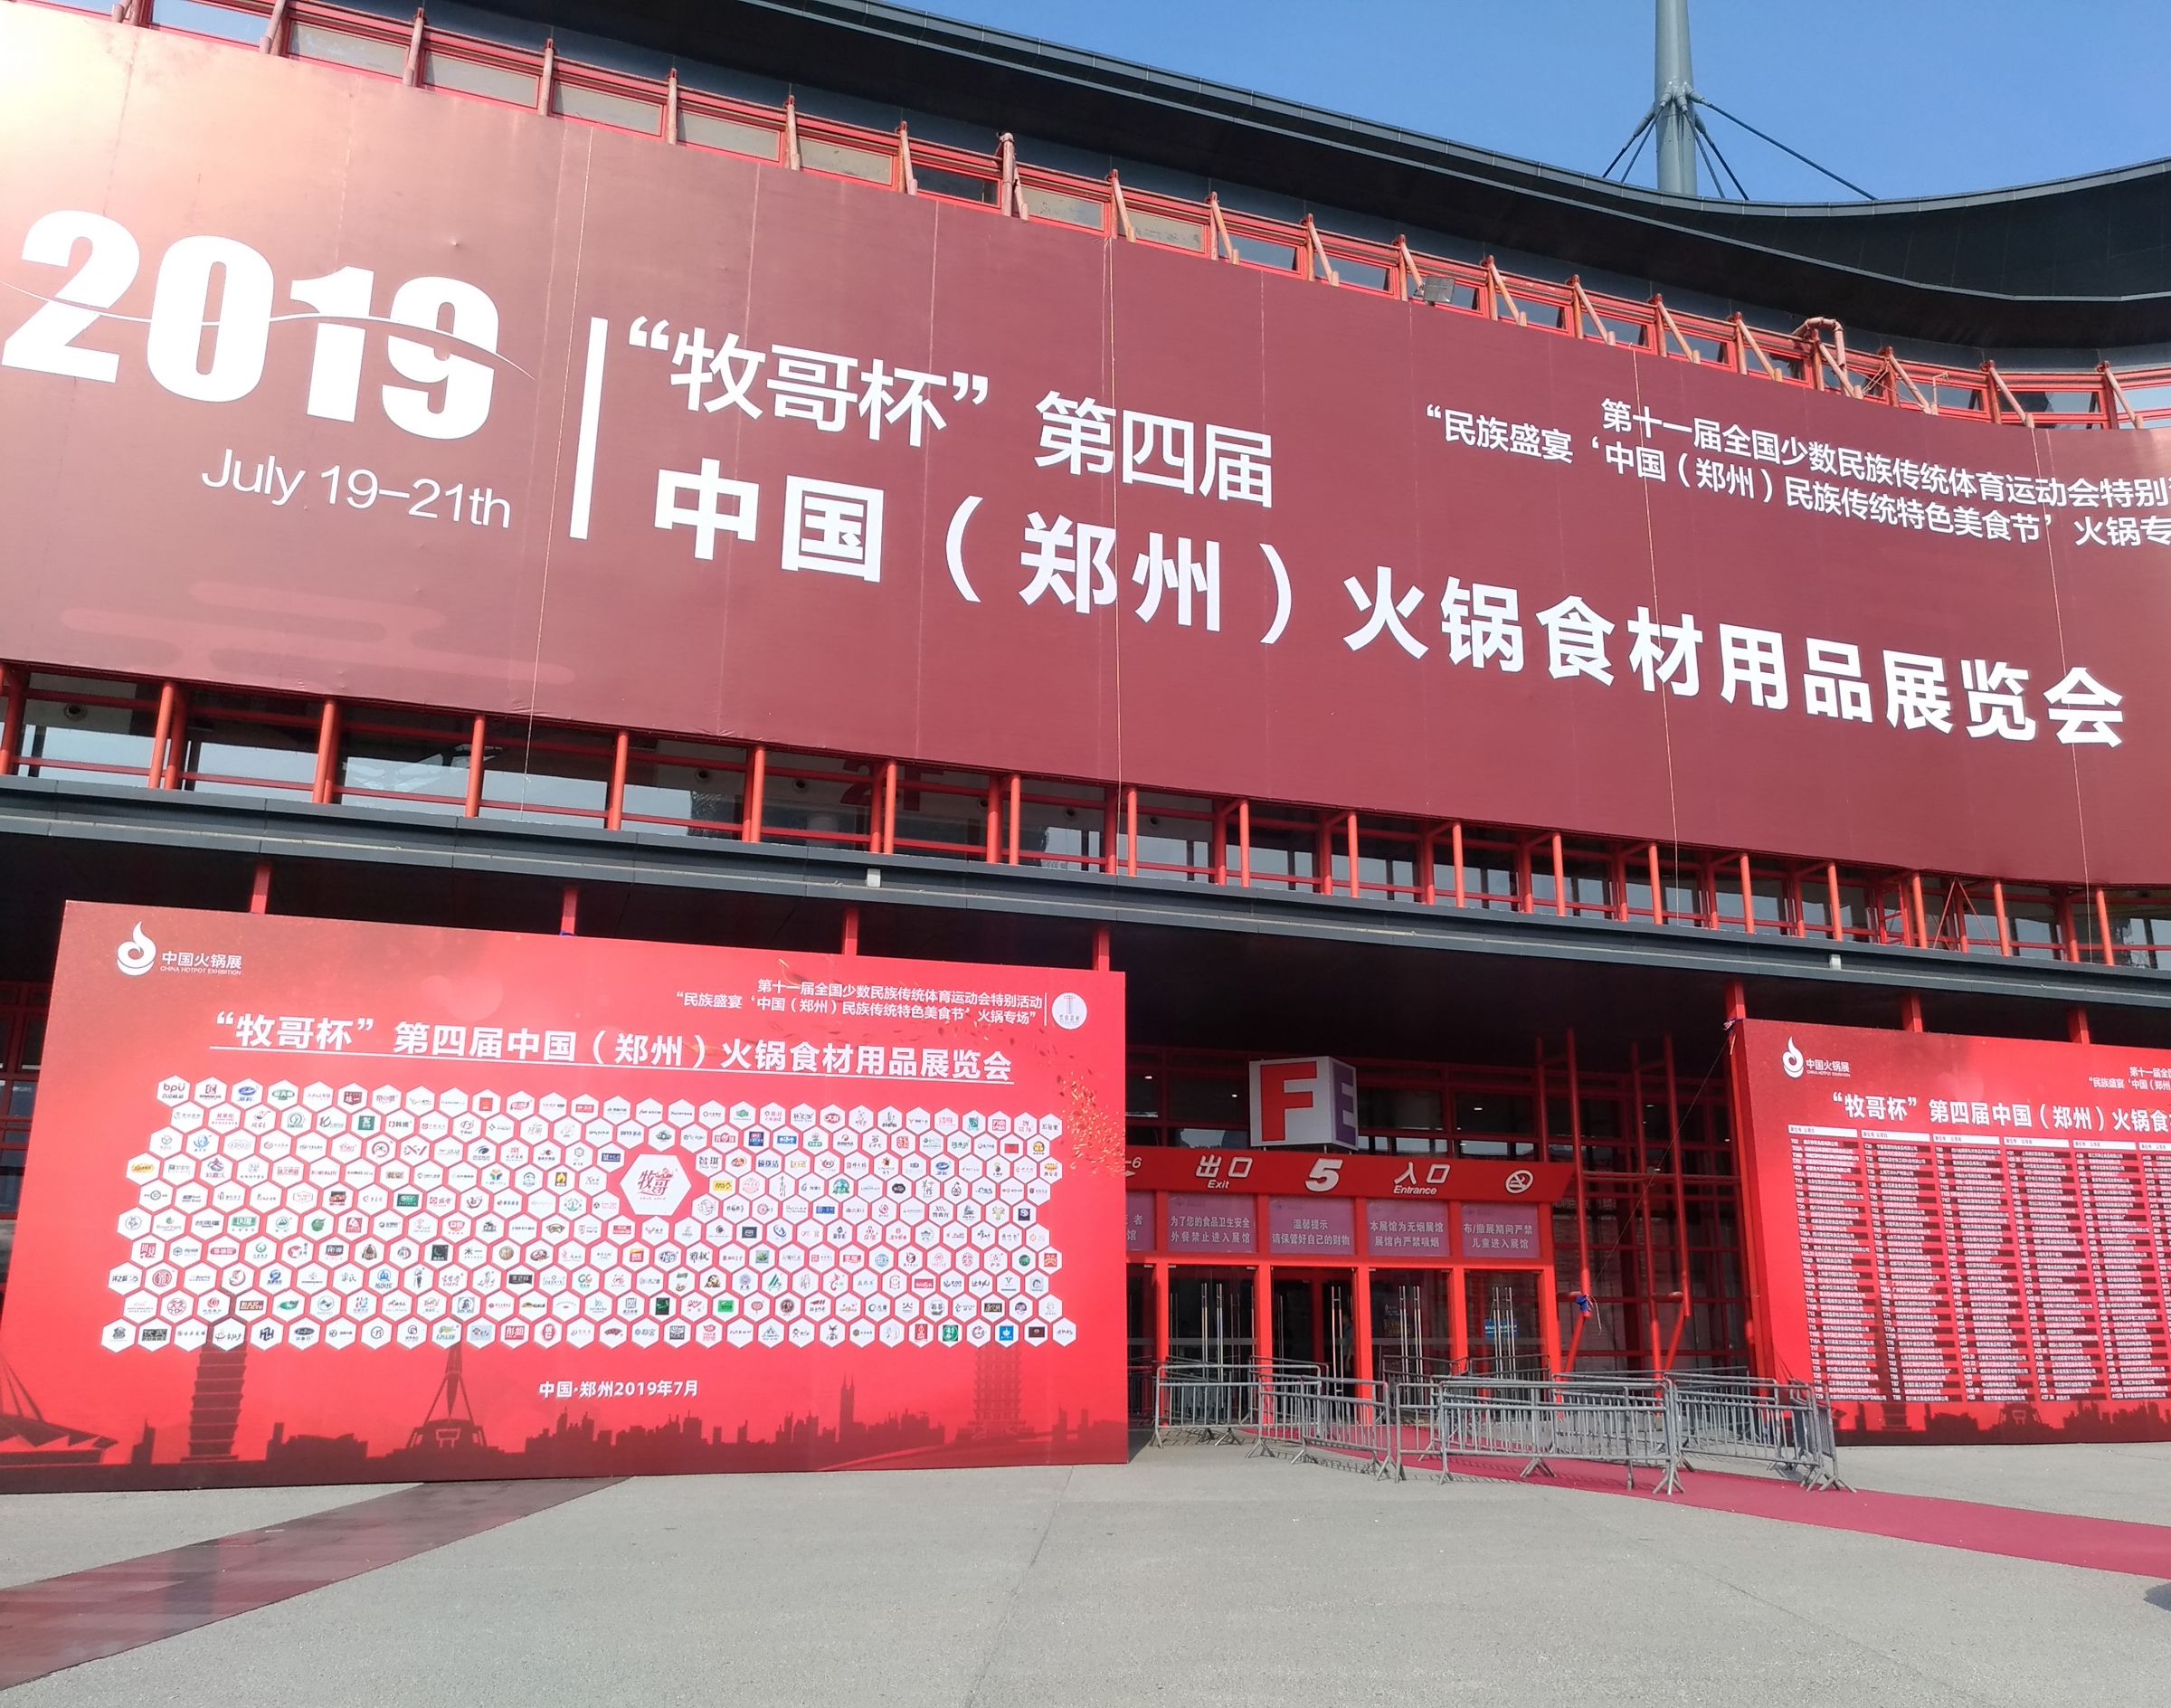 2019 معرض الصين (تشنغتشو) الدولي للمنتجات الغذائية الساخنة